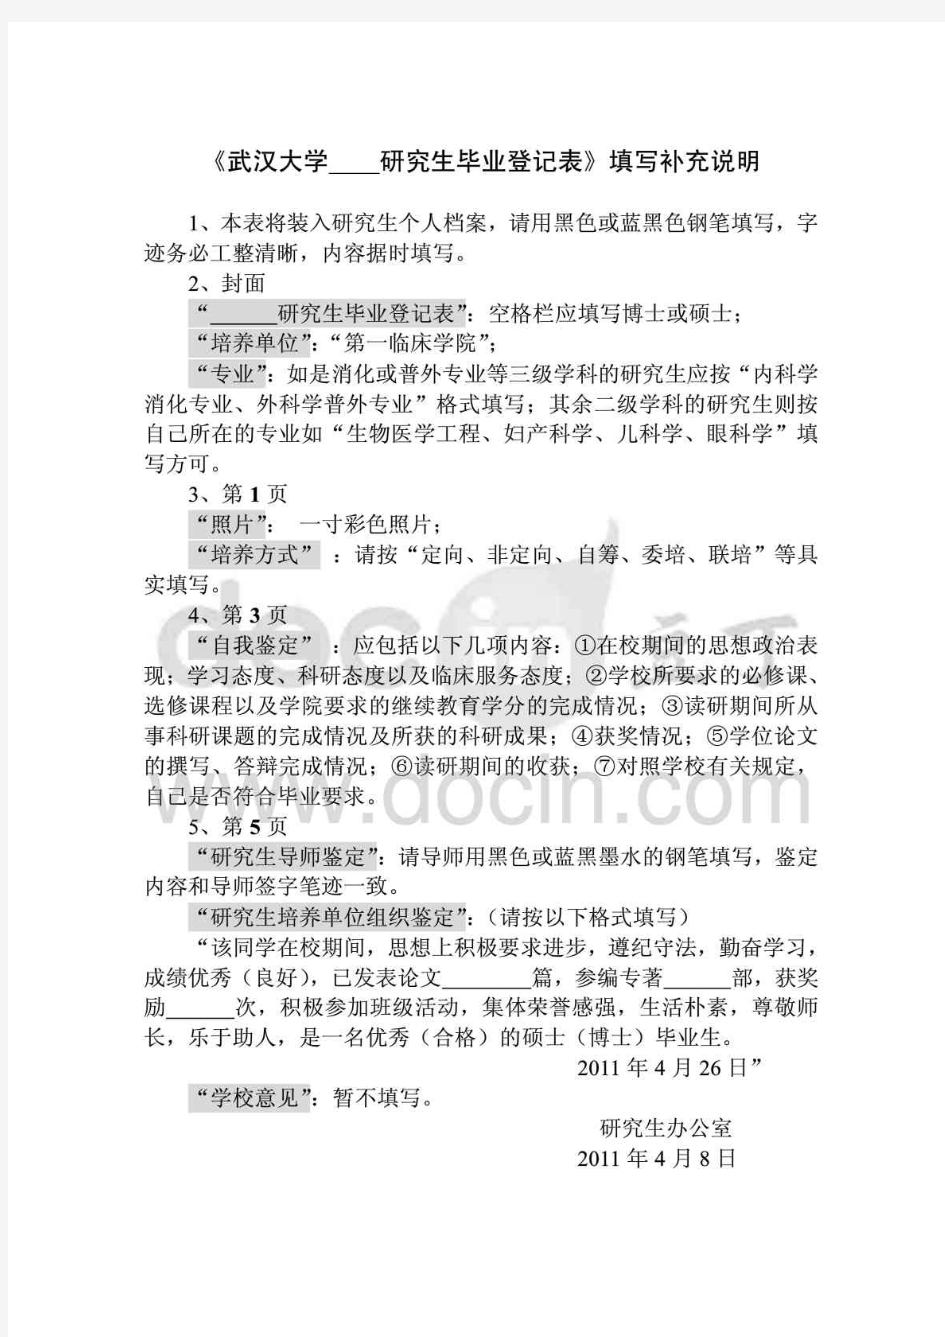 [精]《武汉大学 研究生毕业登记表》填写补充说明